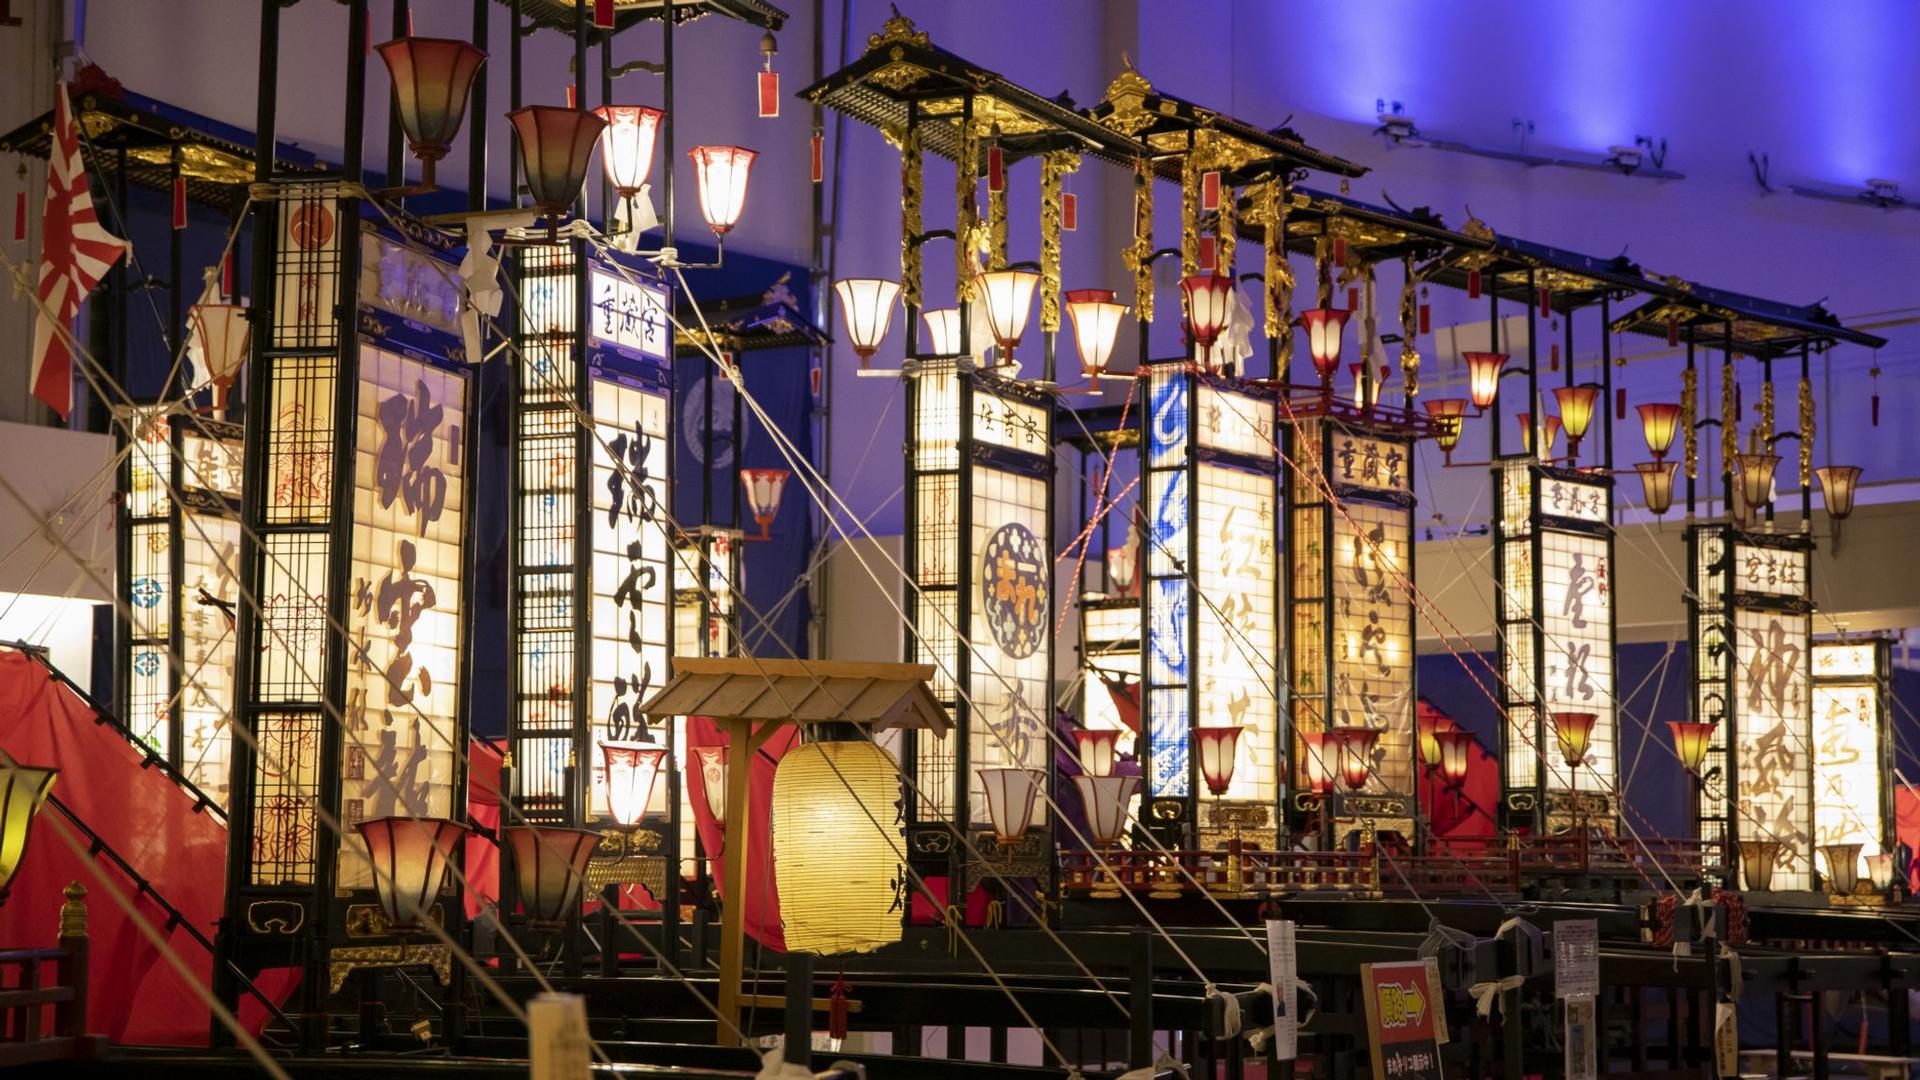 Wajima Taisai Festivals